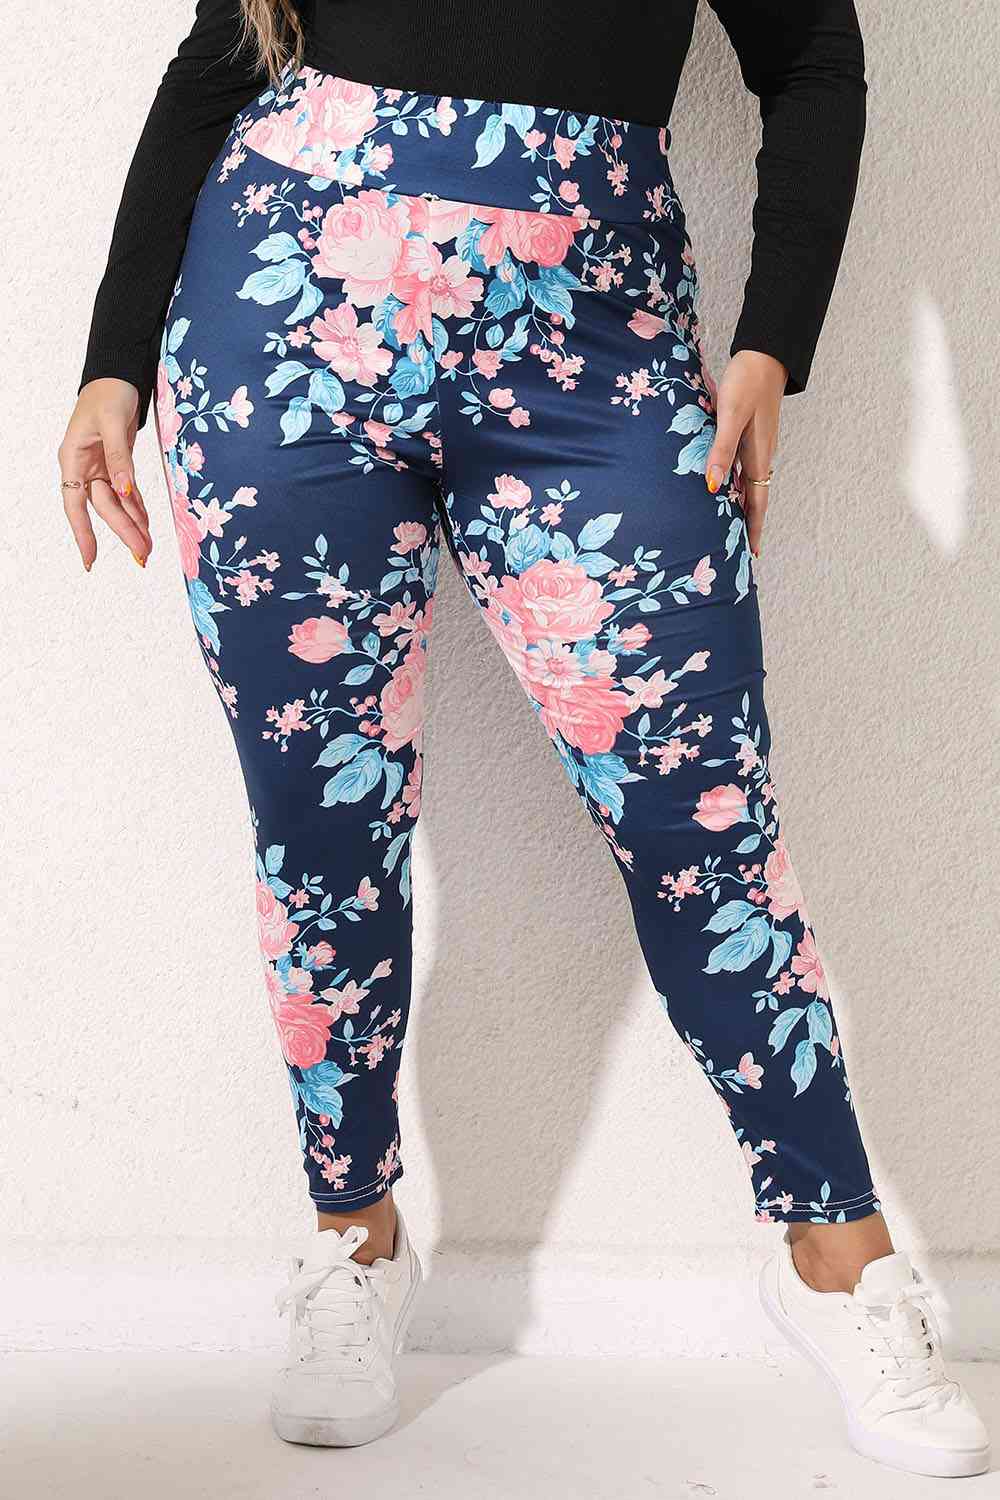 Plus Size Floral Print Legging - Crazy Like a Daisy Boutique #